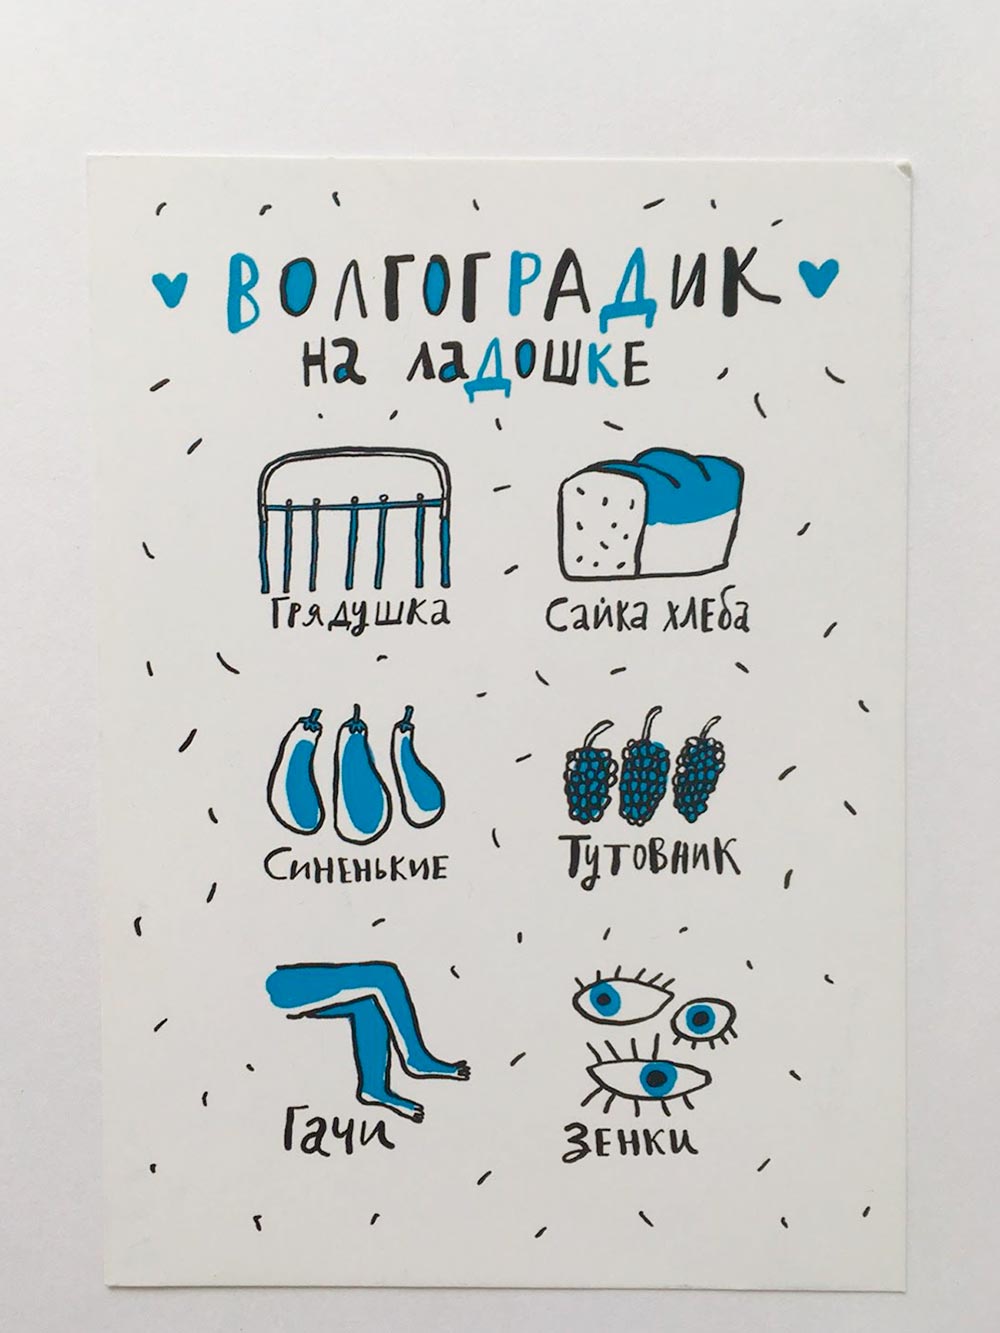 Одна волгоградская художница выпустила набор открыток со словами из местного диалекта и местными мемами. Купить их можно в Горьковской библиотеке или на bookshop.storeqb.com. Серия называется «Волоградик на ладошке»